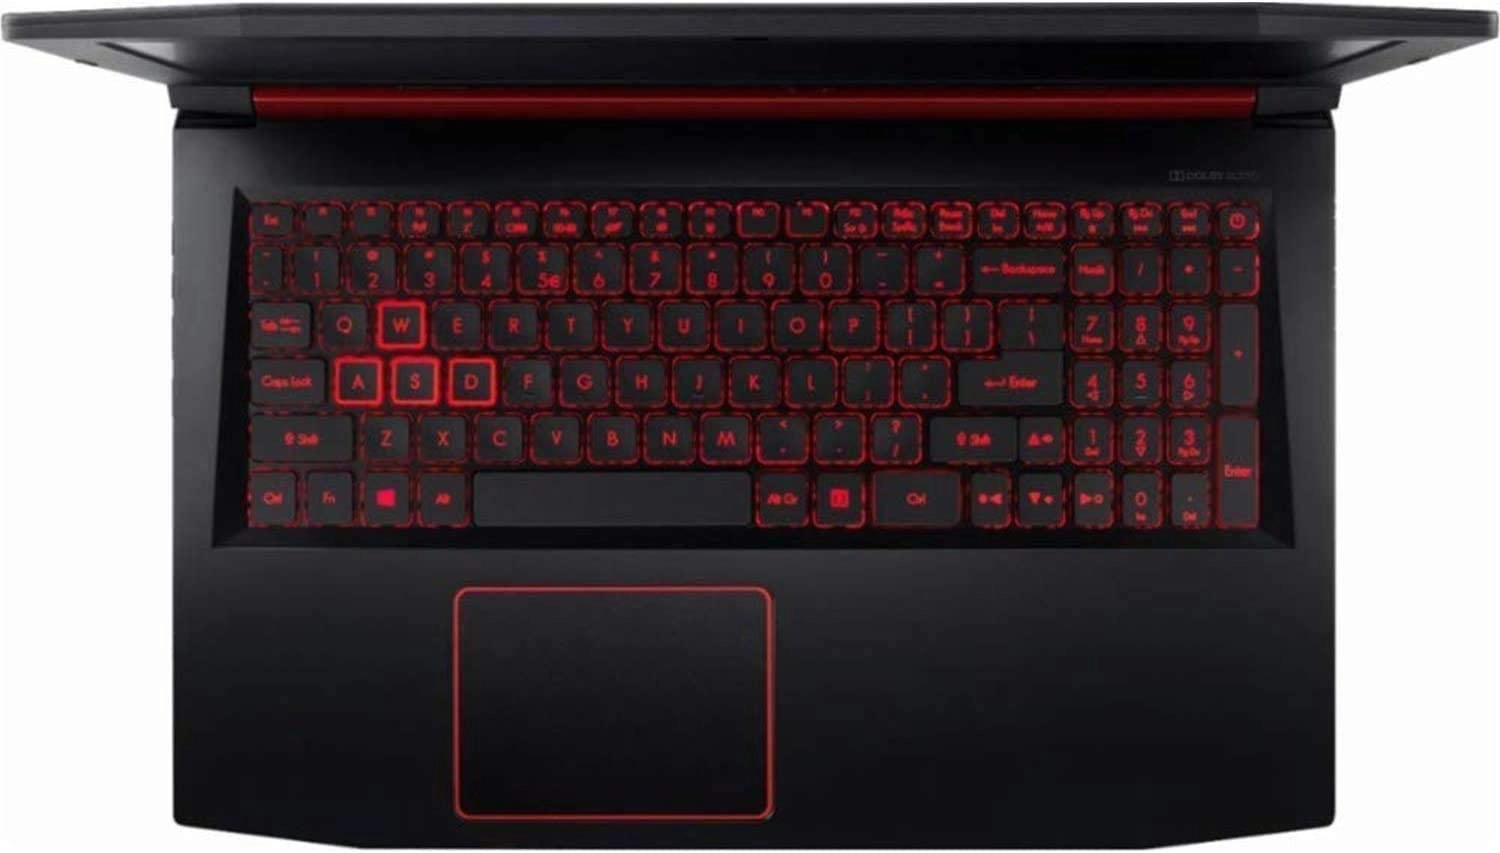 Acer Nitro laptop image